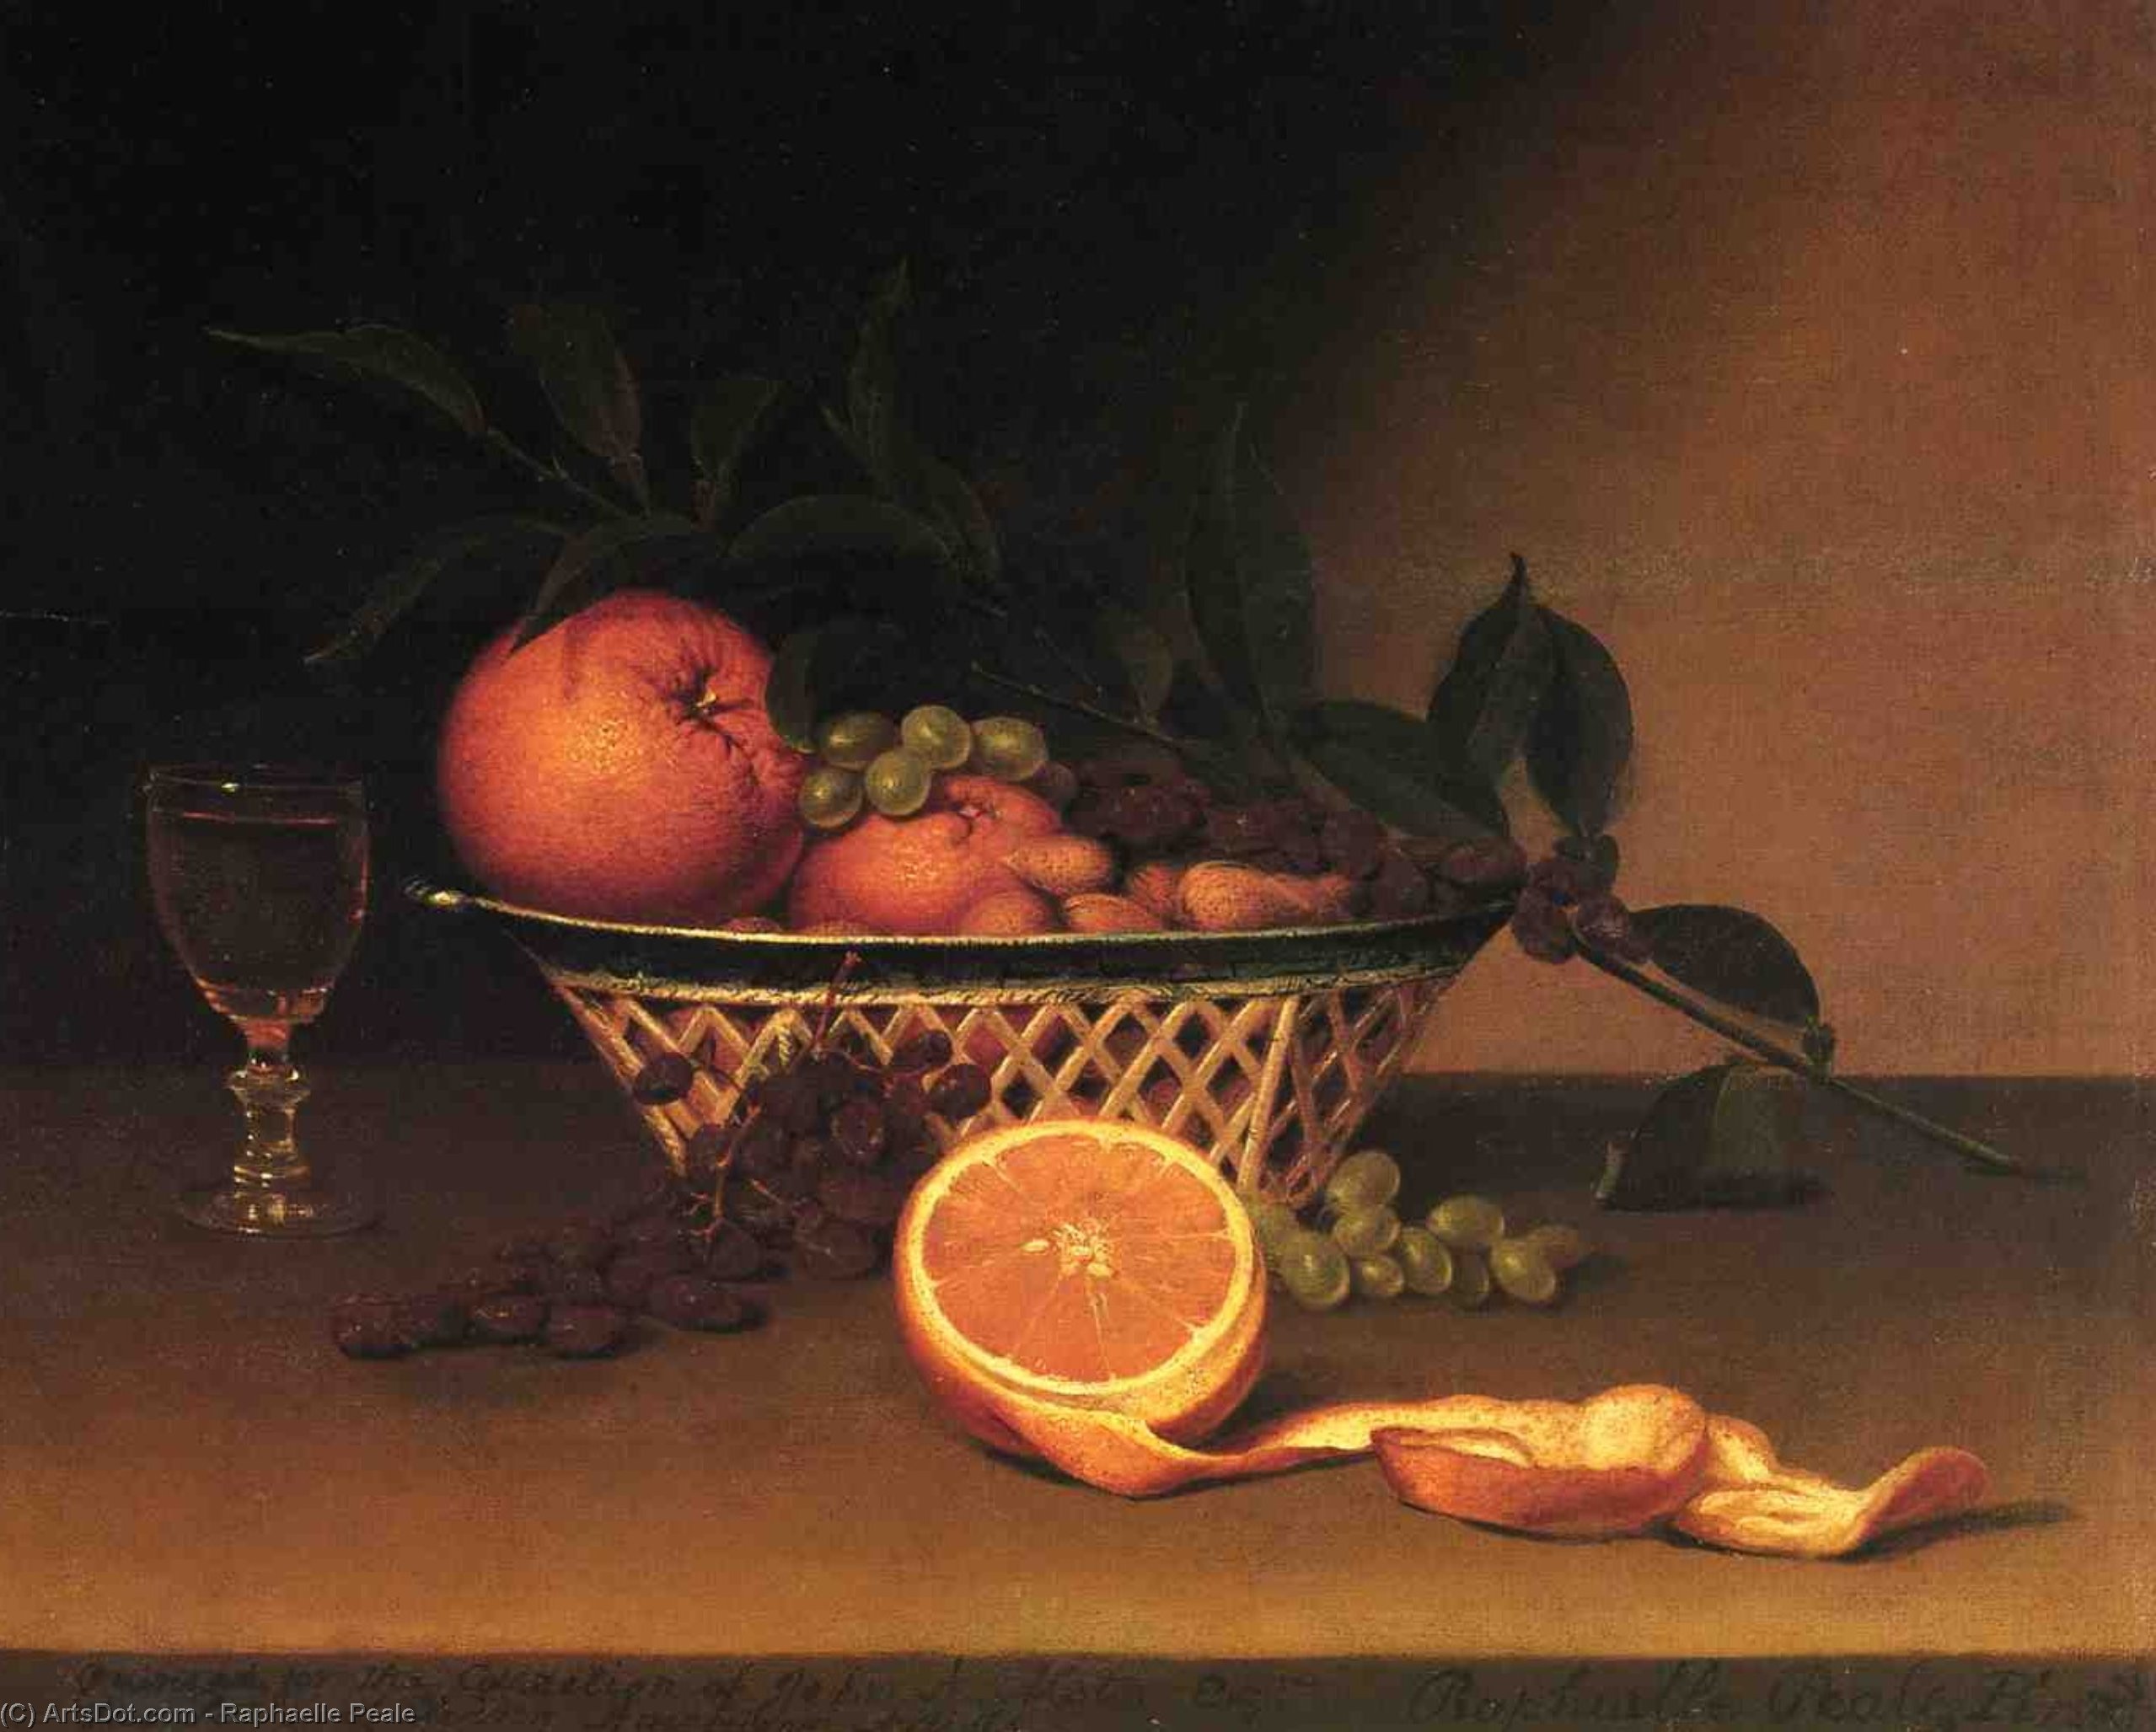 WikiOO.org - אנציקלופדיה לאמנויות יפות - ציור, יצירות אמנות Raphaelle Peale - Still Life with Oranges